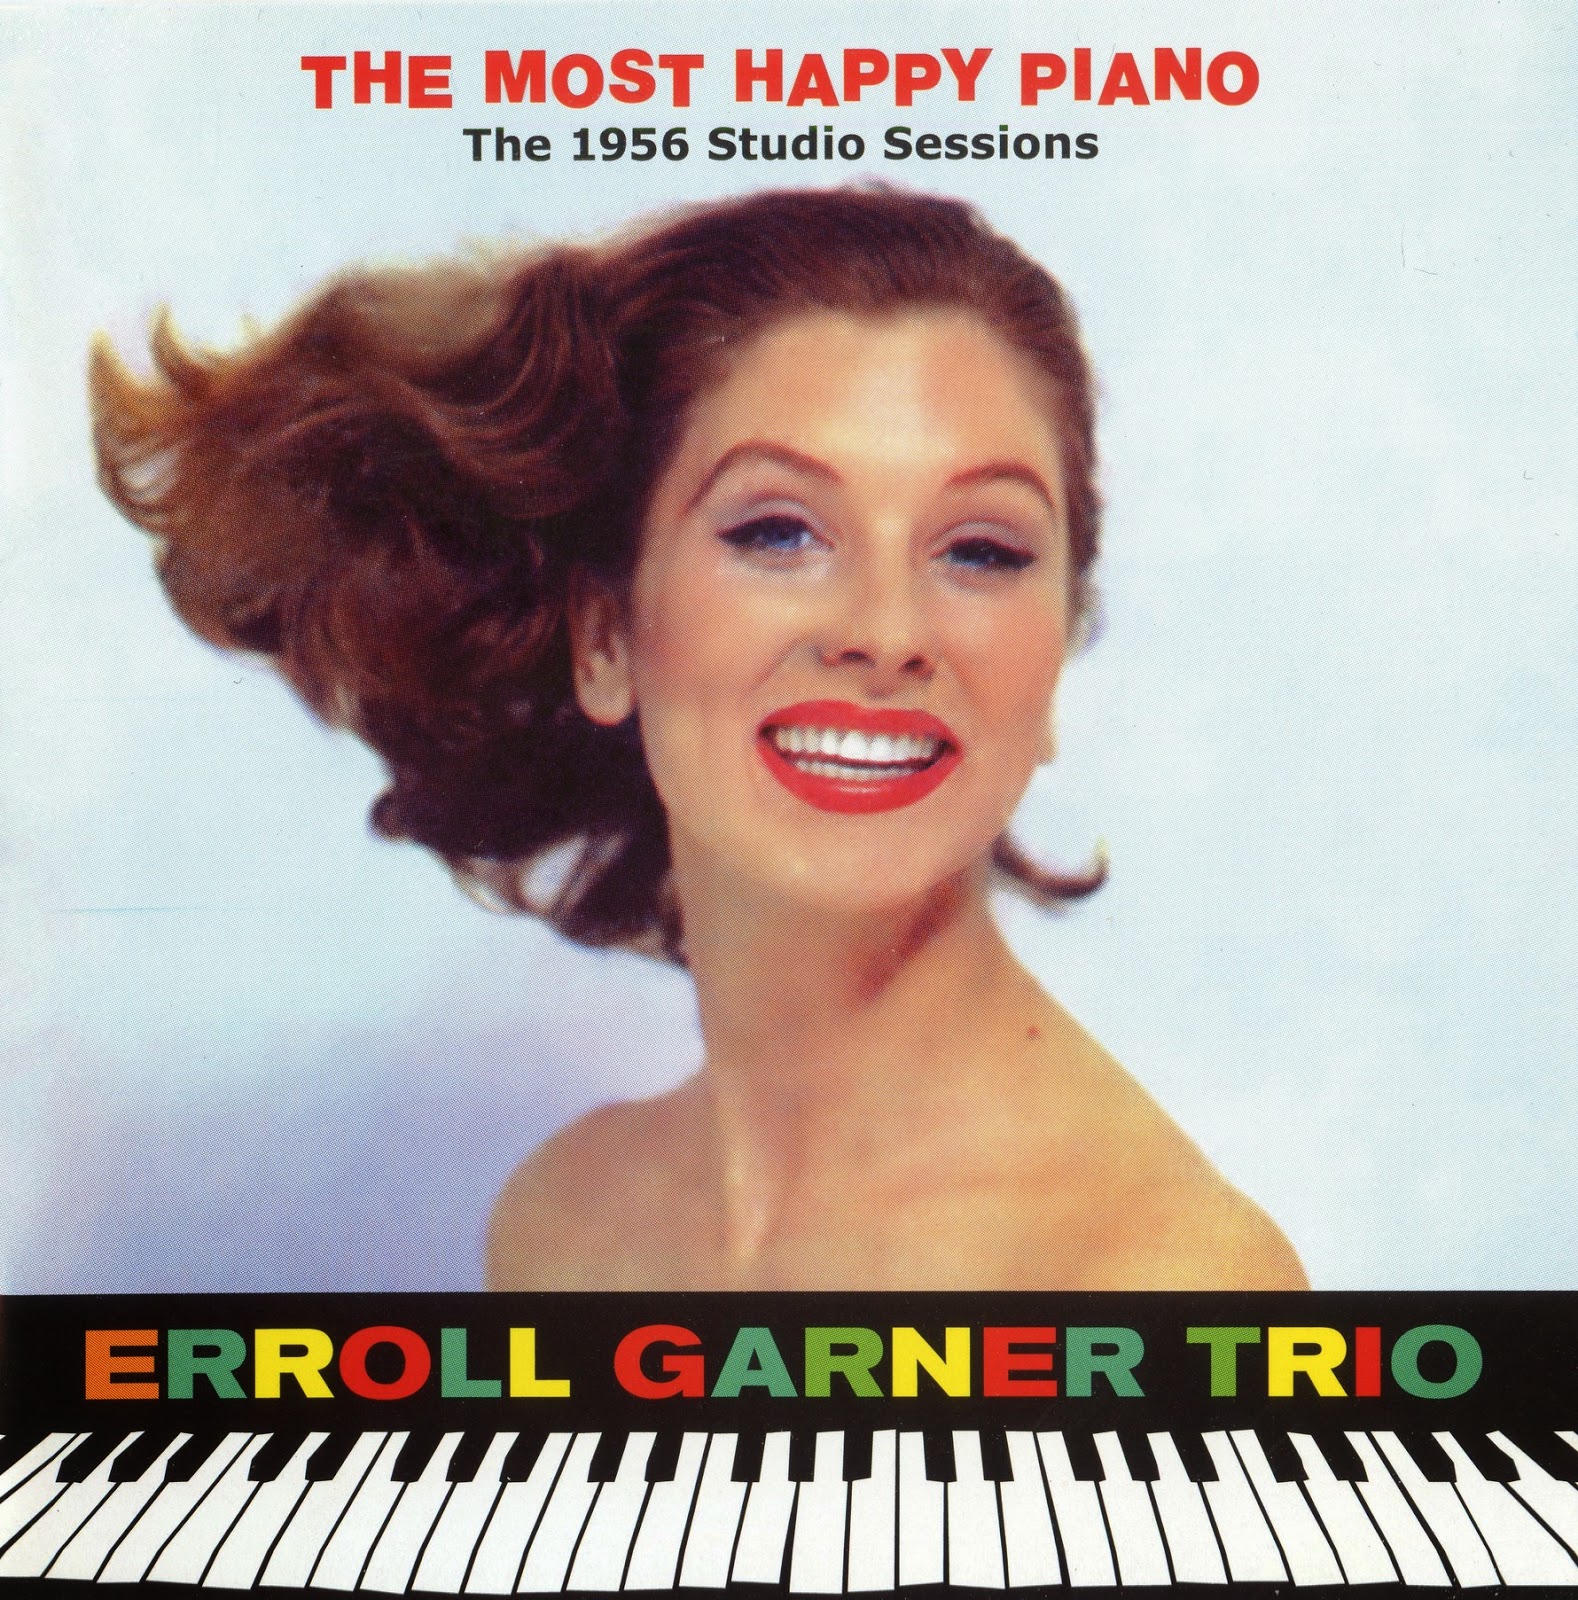 ERROLL GARNER - Erroll Garner Trio - The Most Happy Piano (The 1956 Studio Sessions) cover 